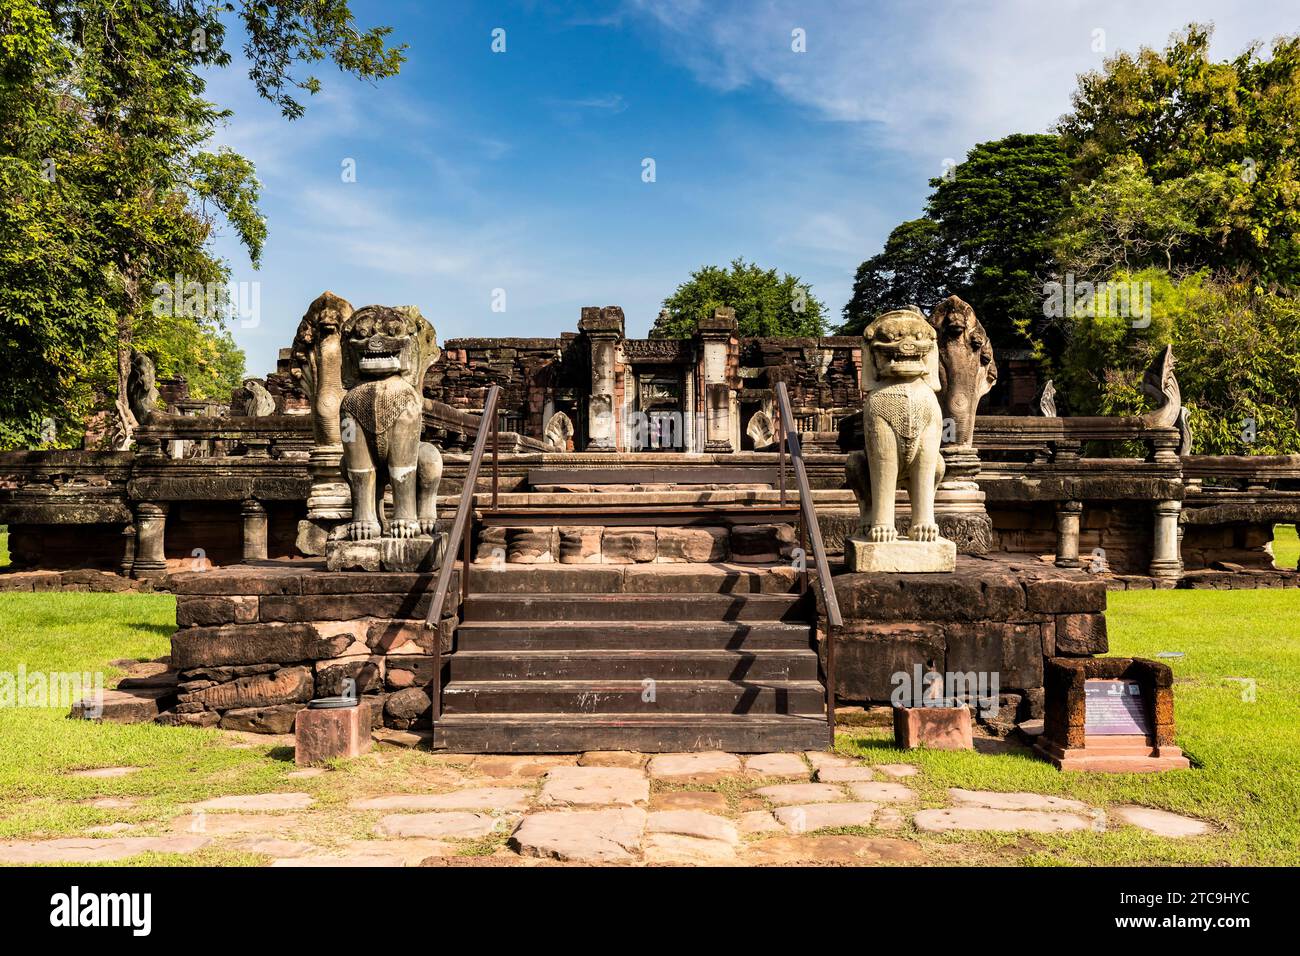 Parc historique de Phimai, ancien temple khmer, étapes d'approche avec statues de lion gardien, Nakhon Ratchasima, Isan, Thaïlande, Asie du Sud-est, Asie Banque D'Images